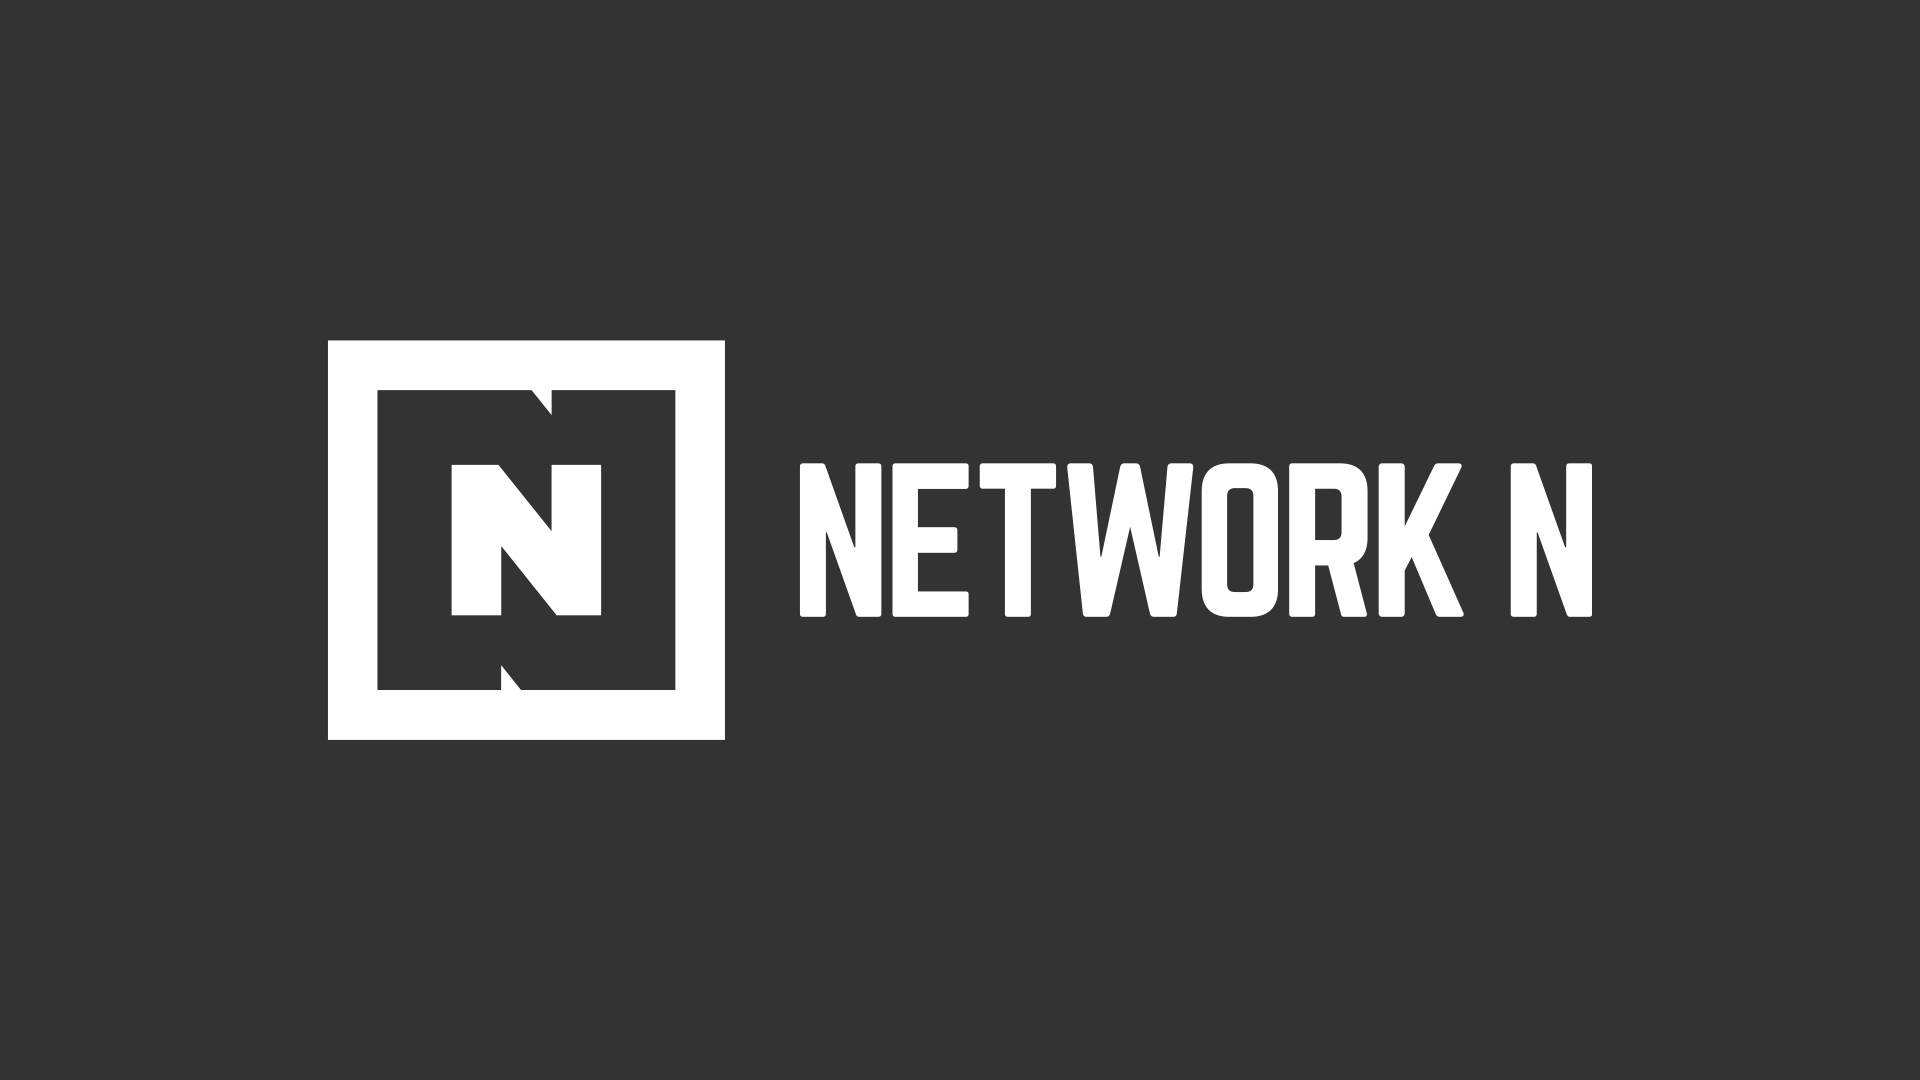 Network N